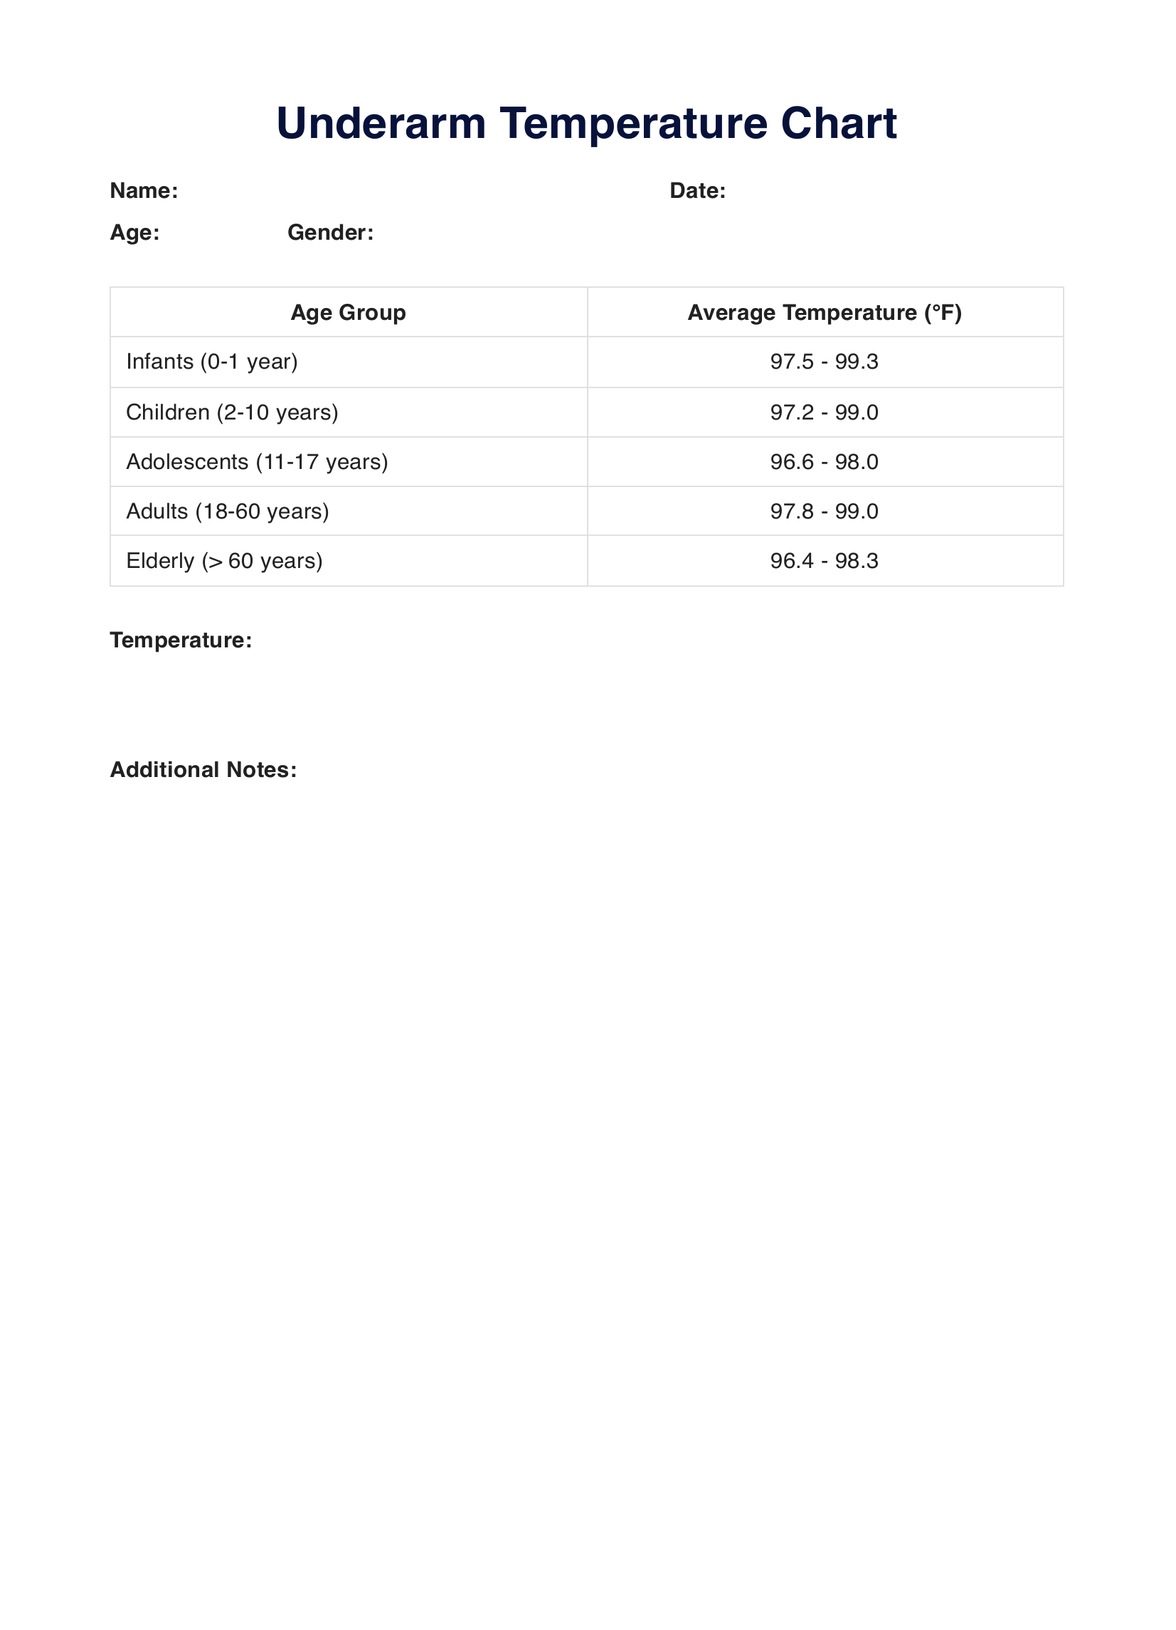 Underarm Temperature Chart PDF Example